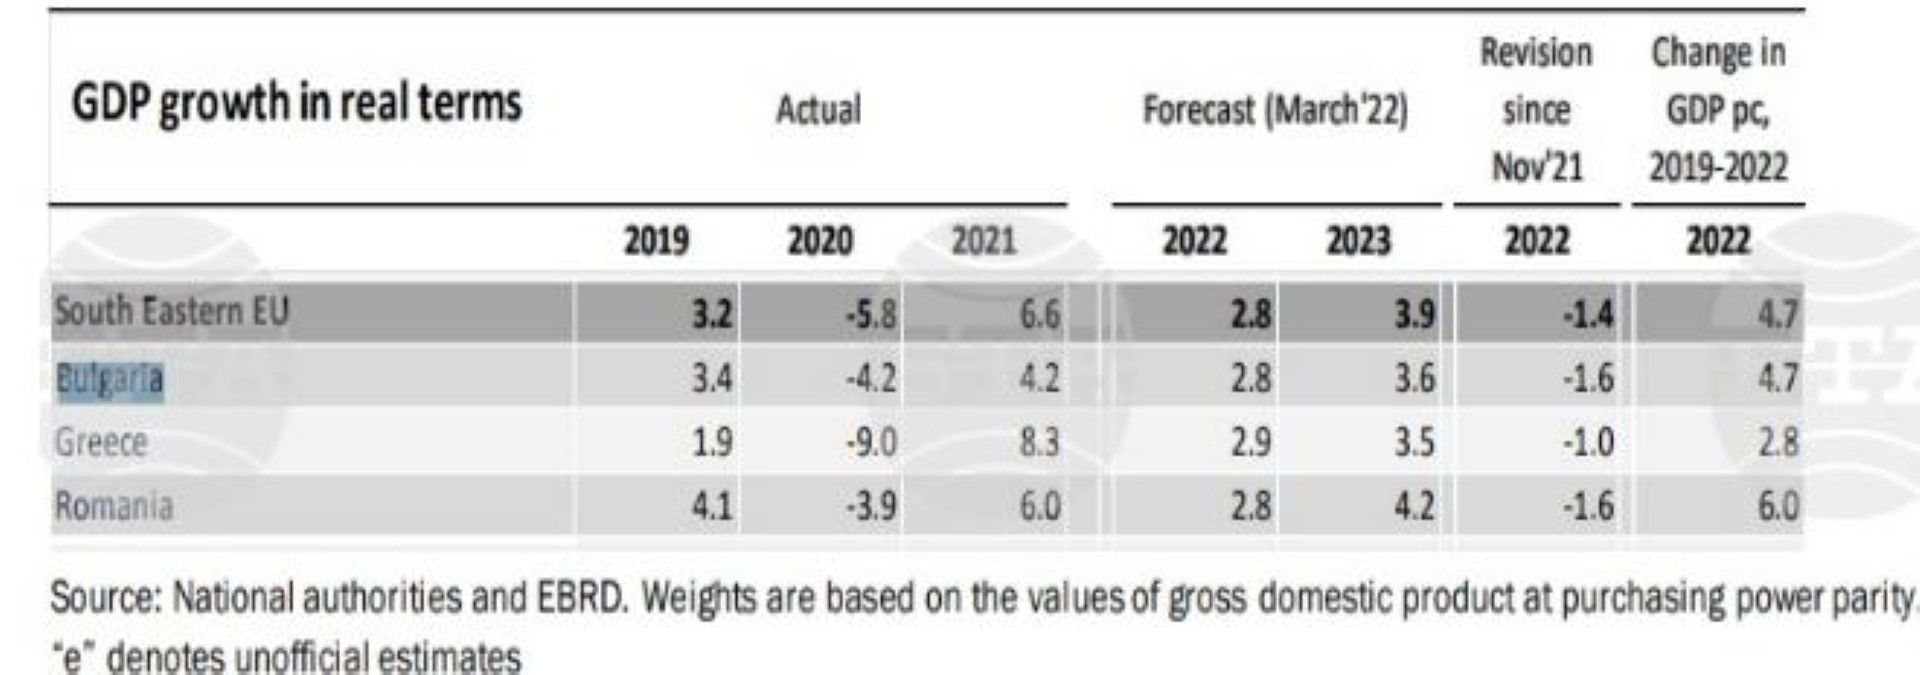 Растеж на БВП, отчетни данни, прогноза, вкл. ревизирана по години